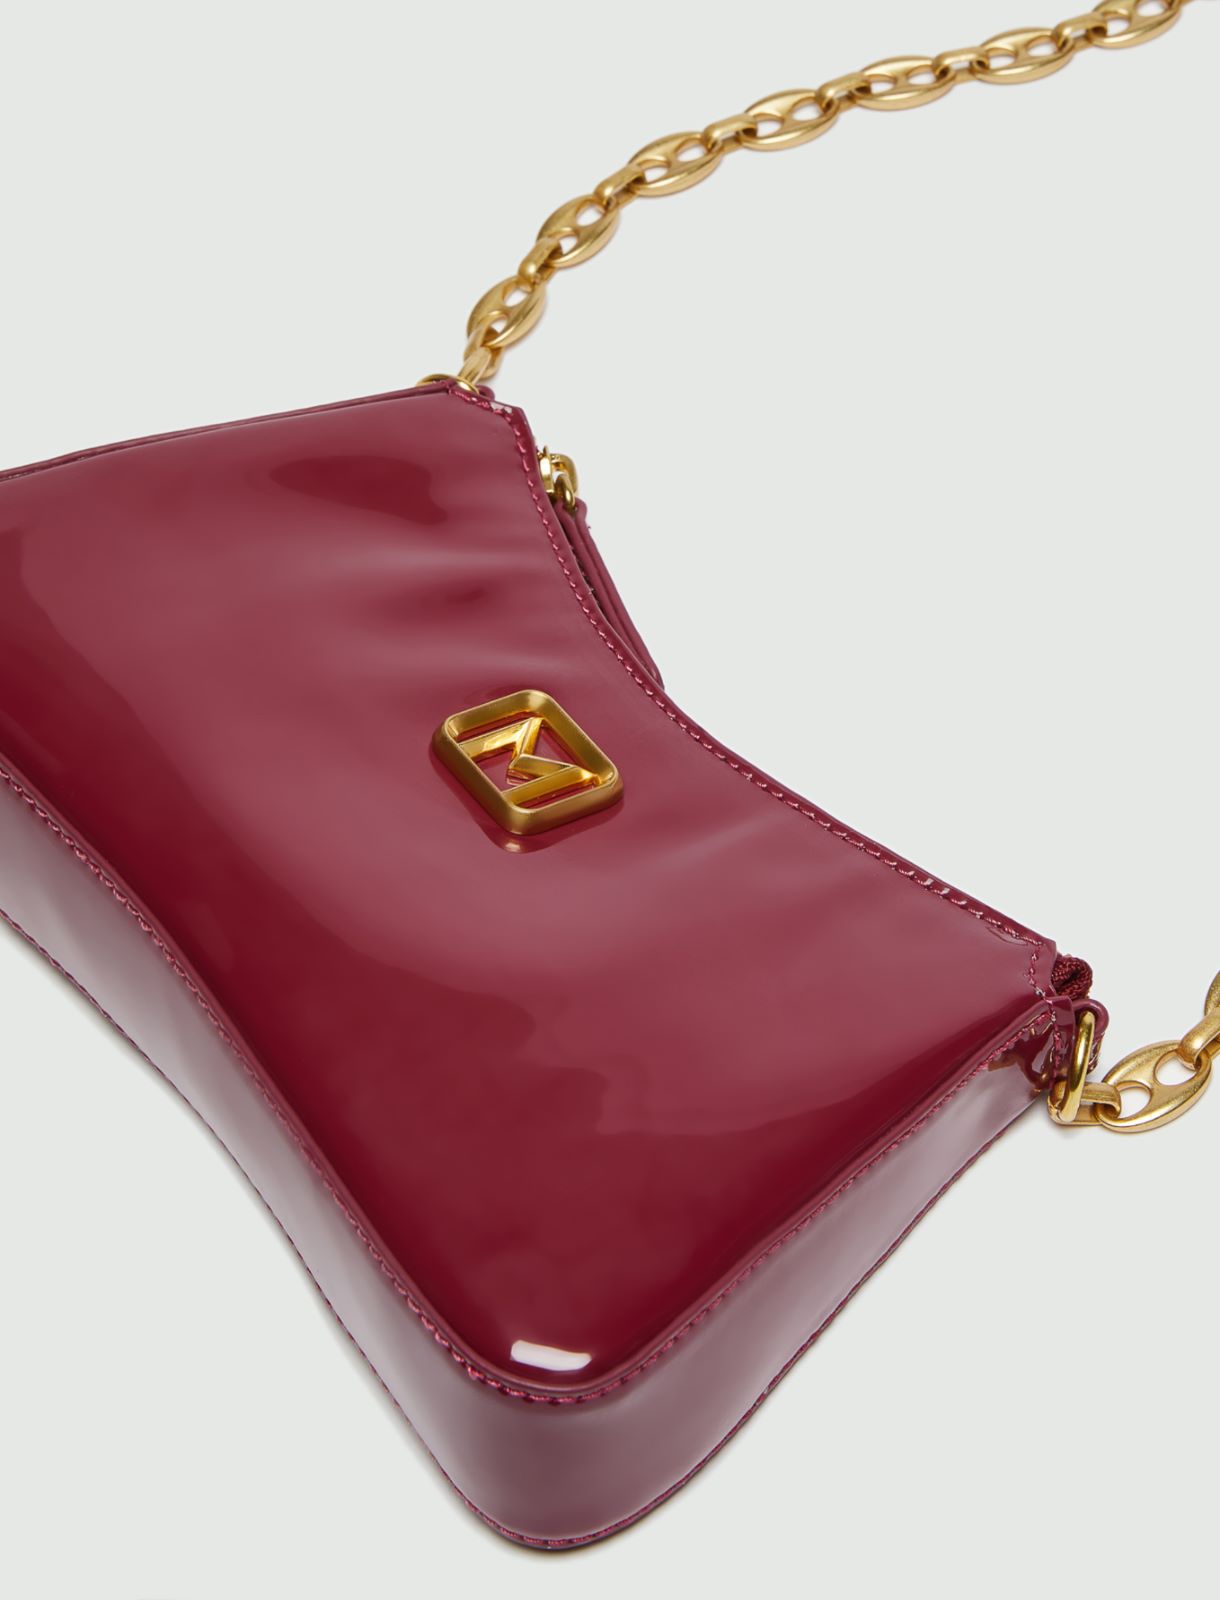 Patent leather bag - Bordeaux - Marella - 4